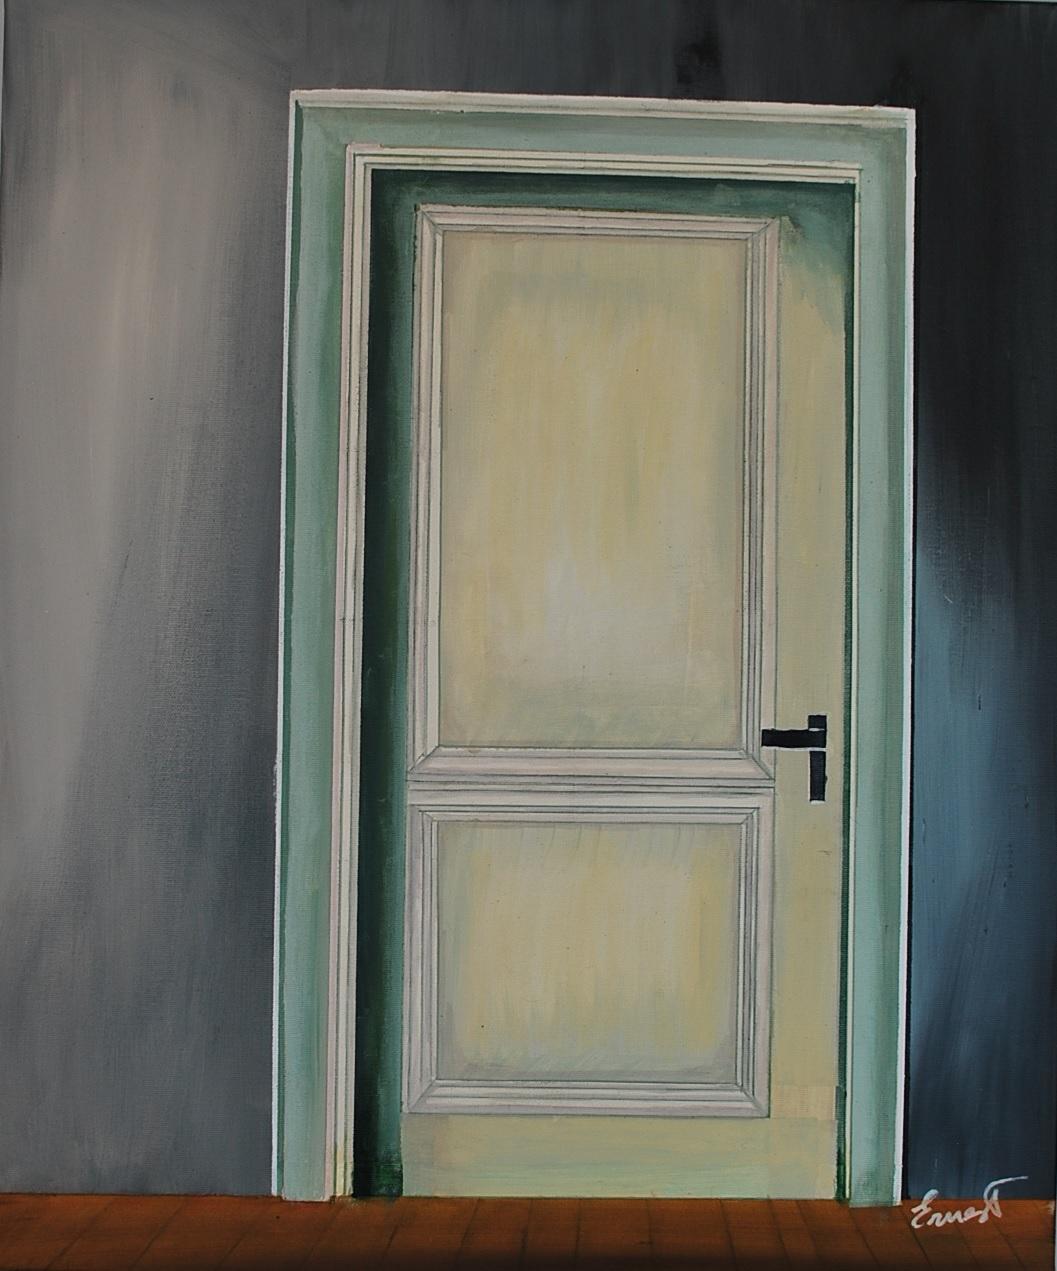 Figurative Painting Ernest Carneado Ferreri - ¿Qué hay detrás de la puerta ?